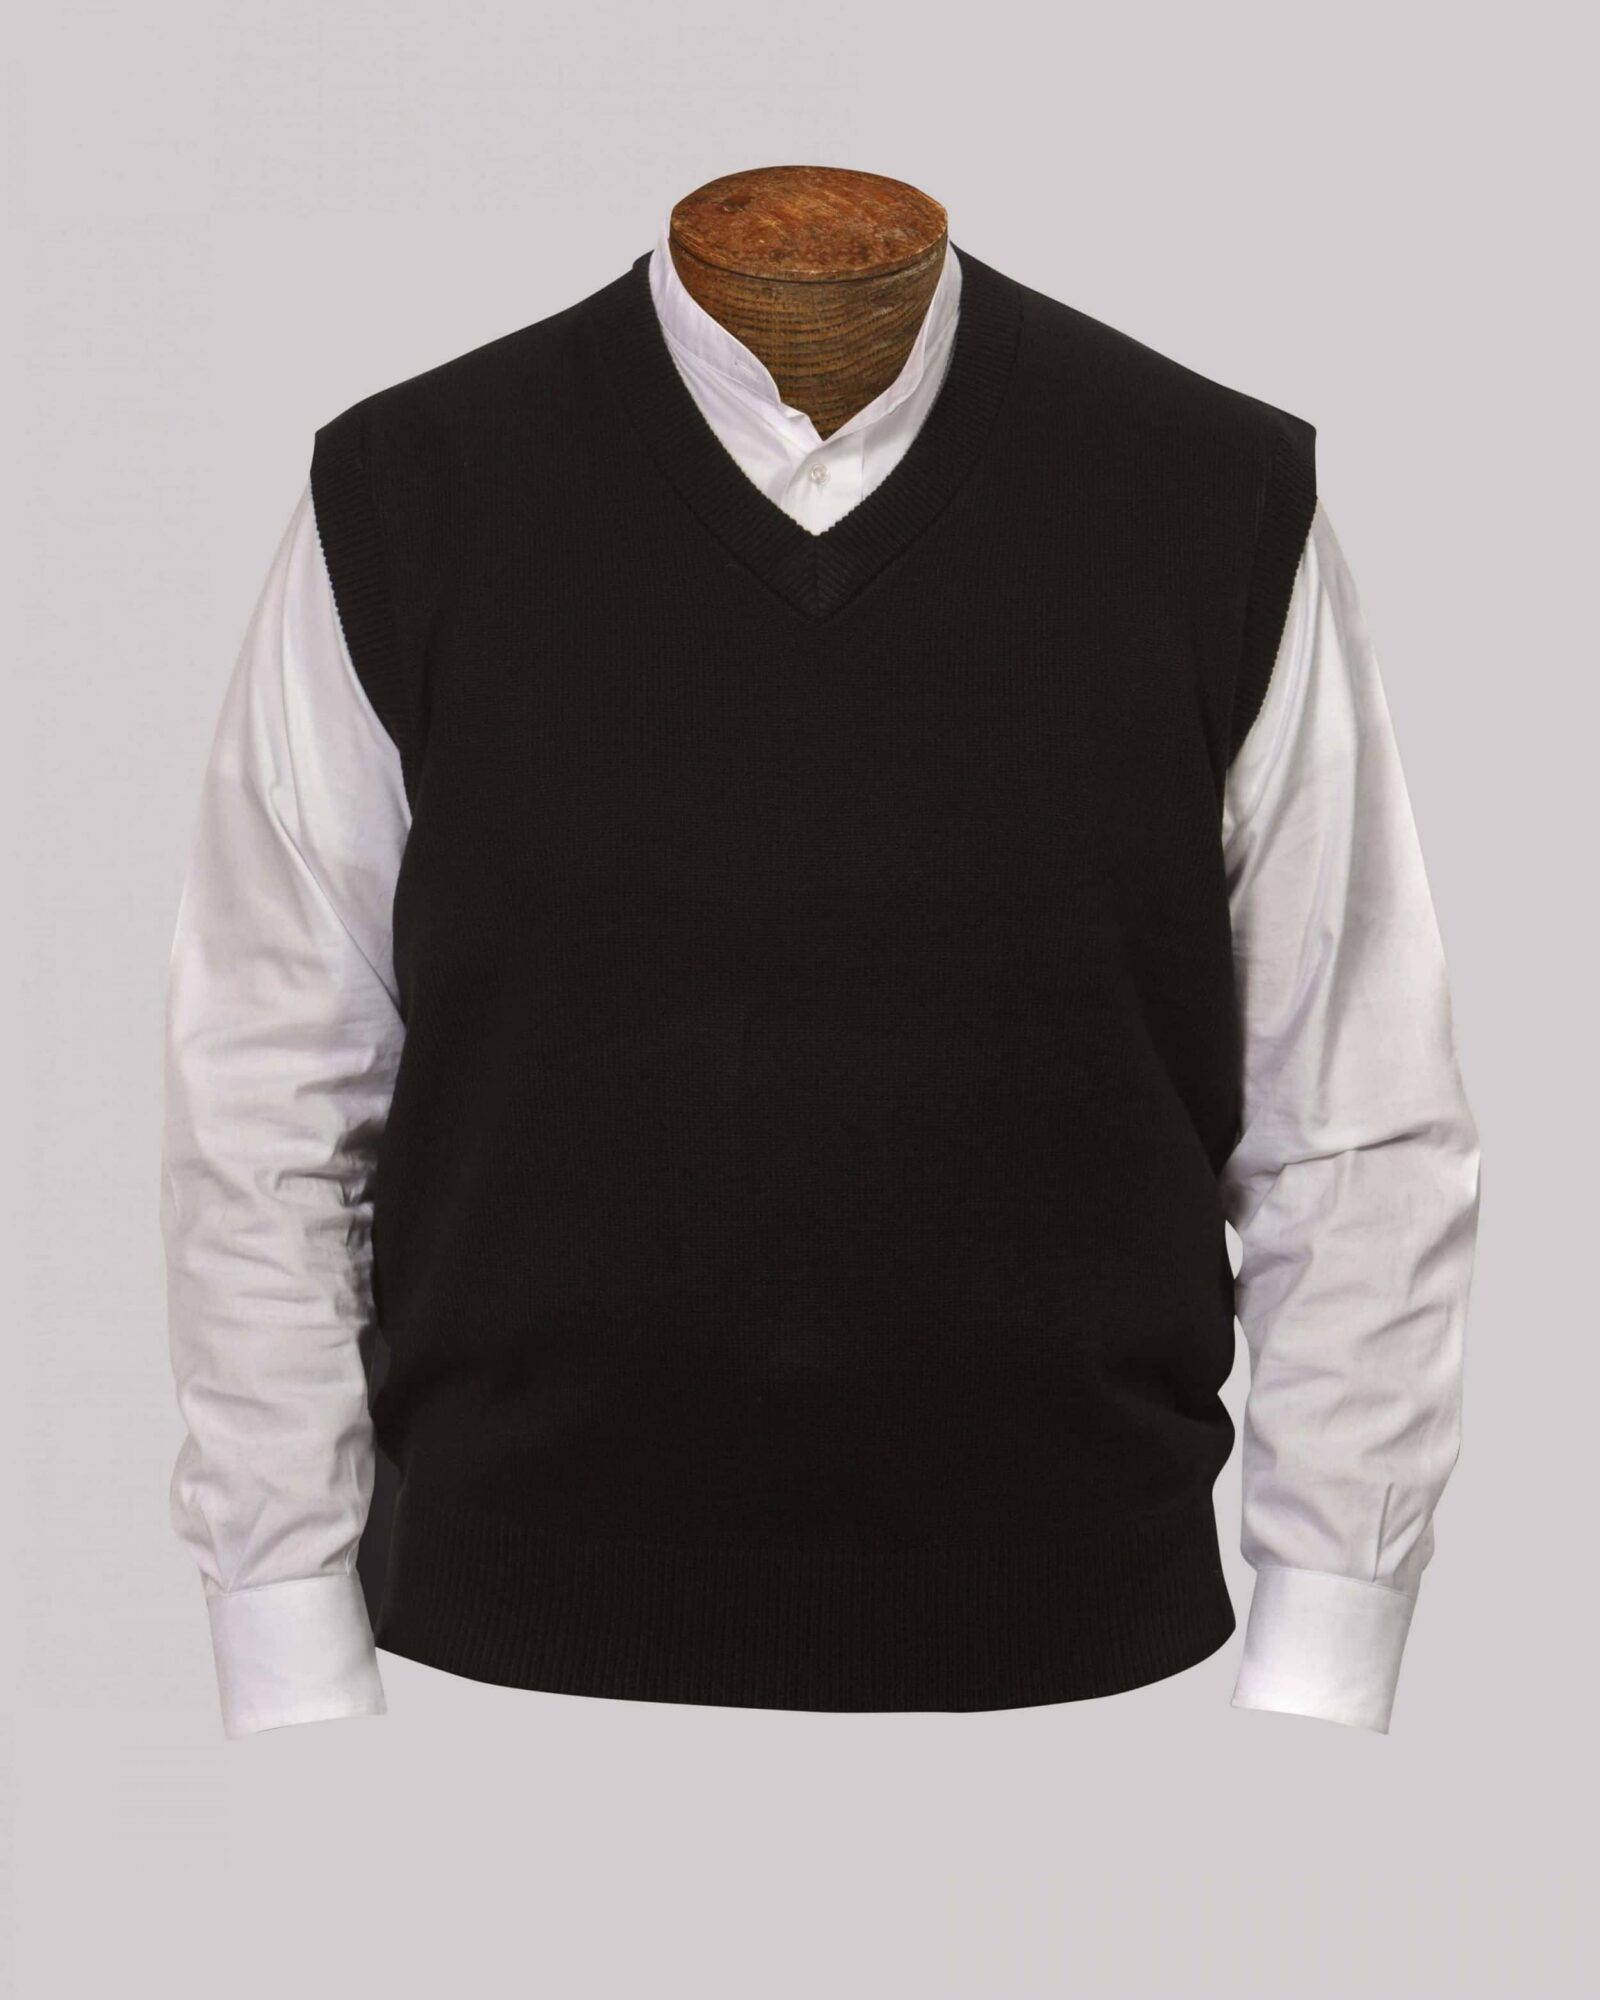 McGreevy's Everyday Sweater Vest